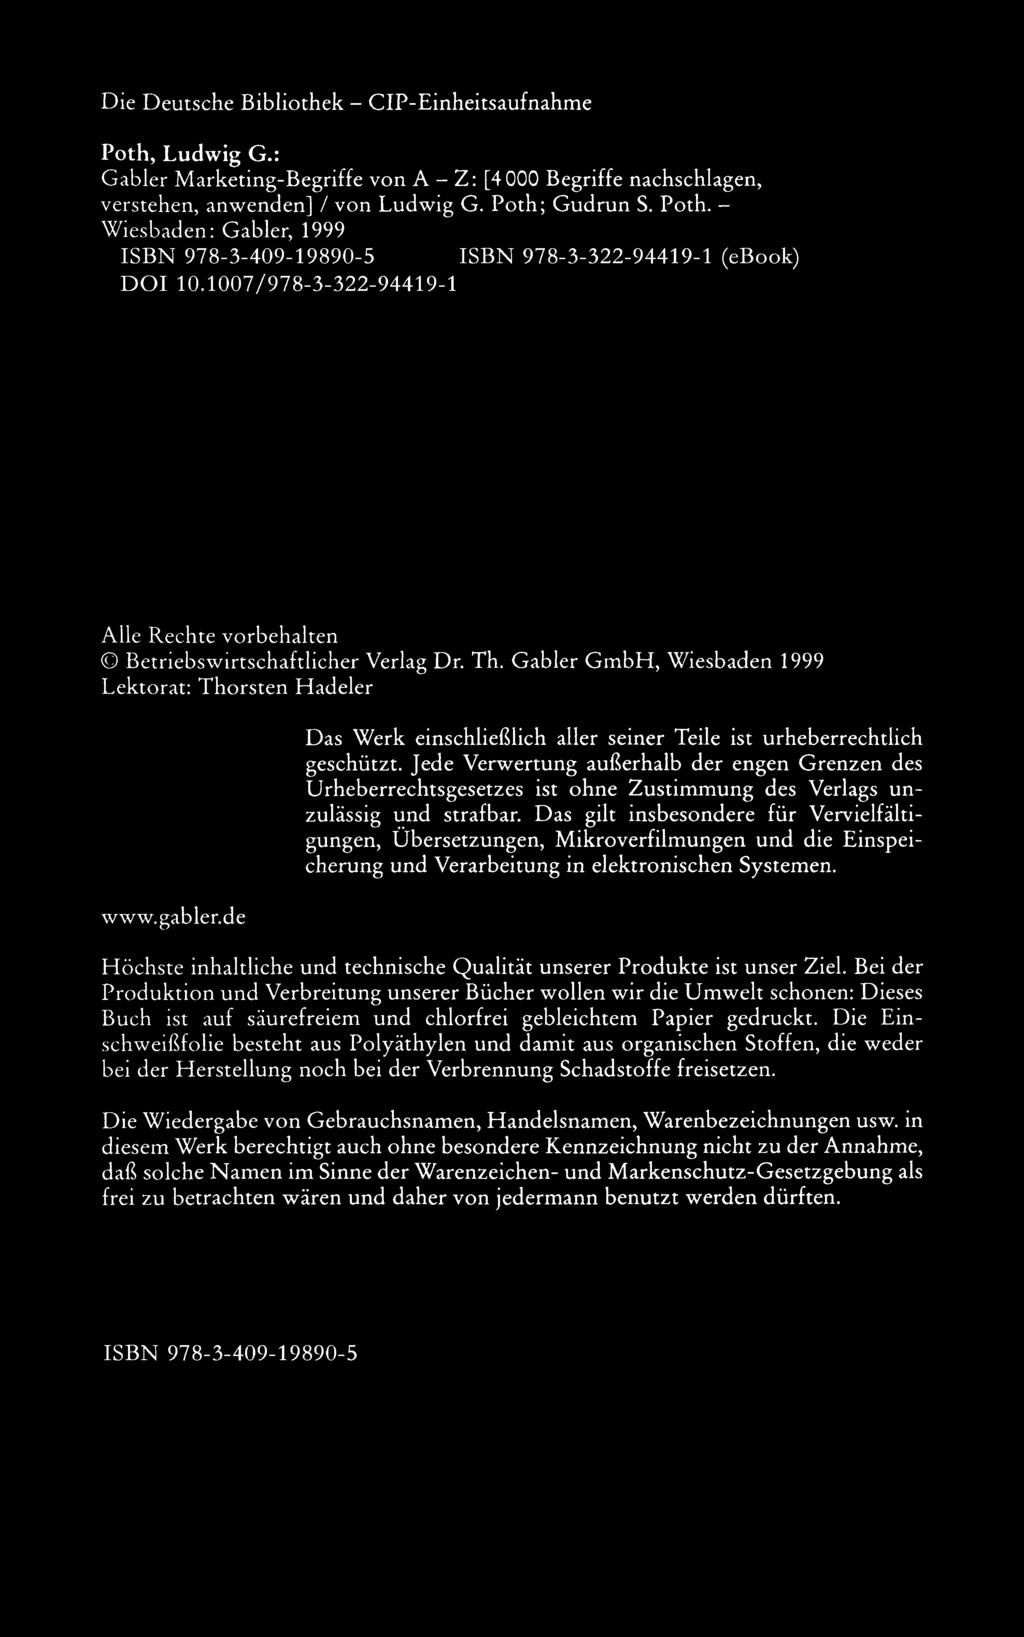 Die Deutsche Bibliothek - CIP-Einheitsaufnahme Poth, Ludwig G.: Gabler Marketing-Begriffe von A - Z: [4000 Begriffe nachschlagen, verstehen, anwenden] / von Ludwig G. Poth; Gudrun S. Poth. Wiesbaden: Gabler, 1999 ISBN 978-3-409-19890-5 ISBN 978-3-322-94419-1 (ebook) DOI 10.